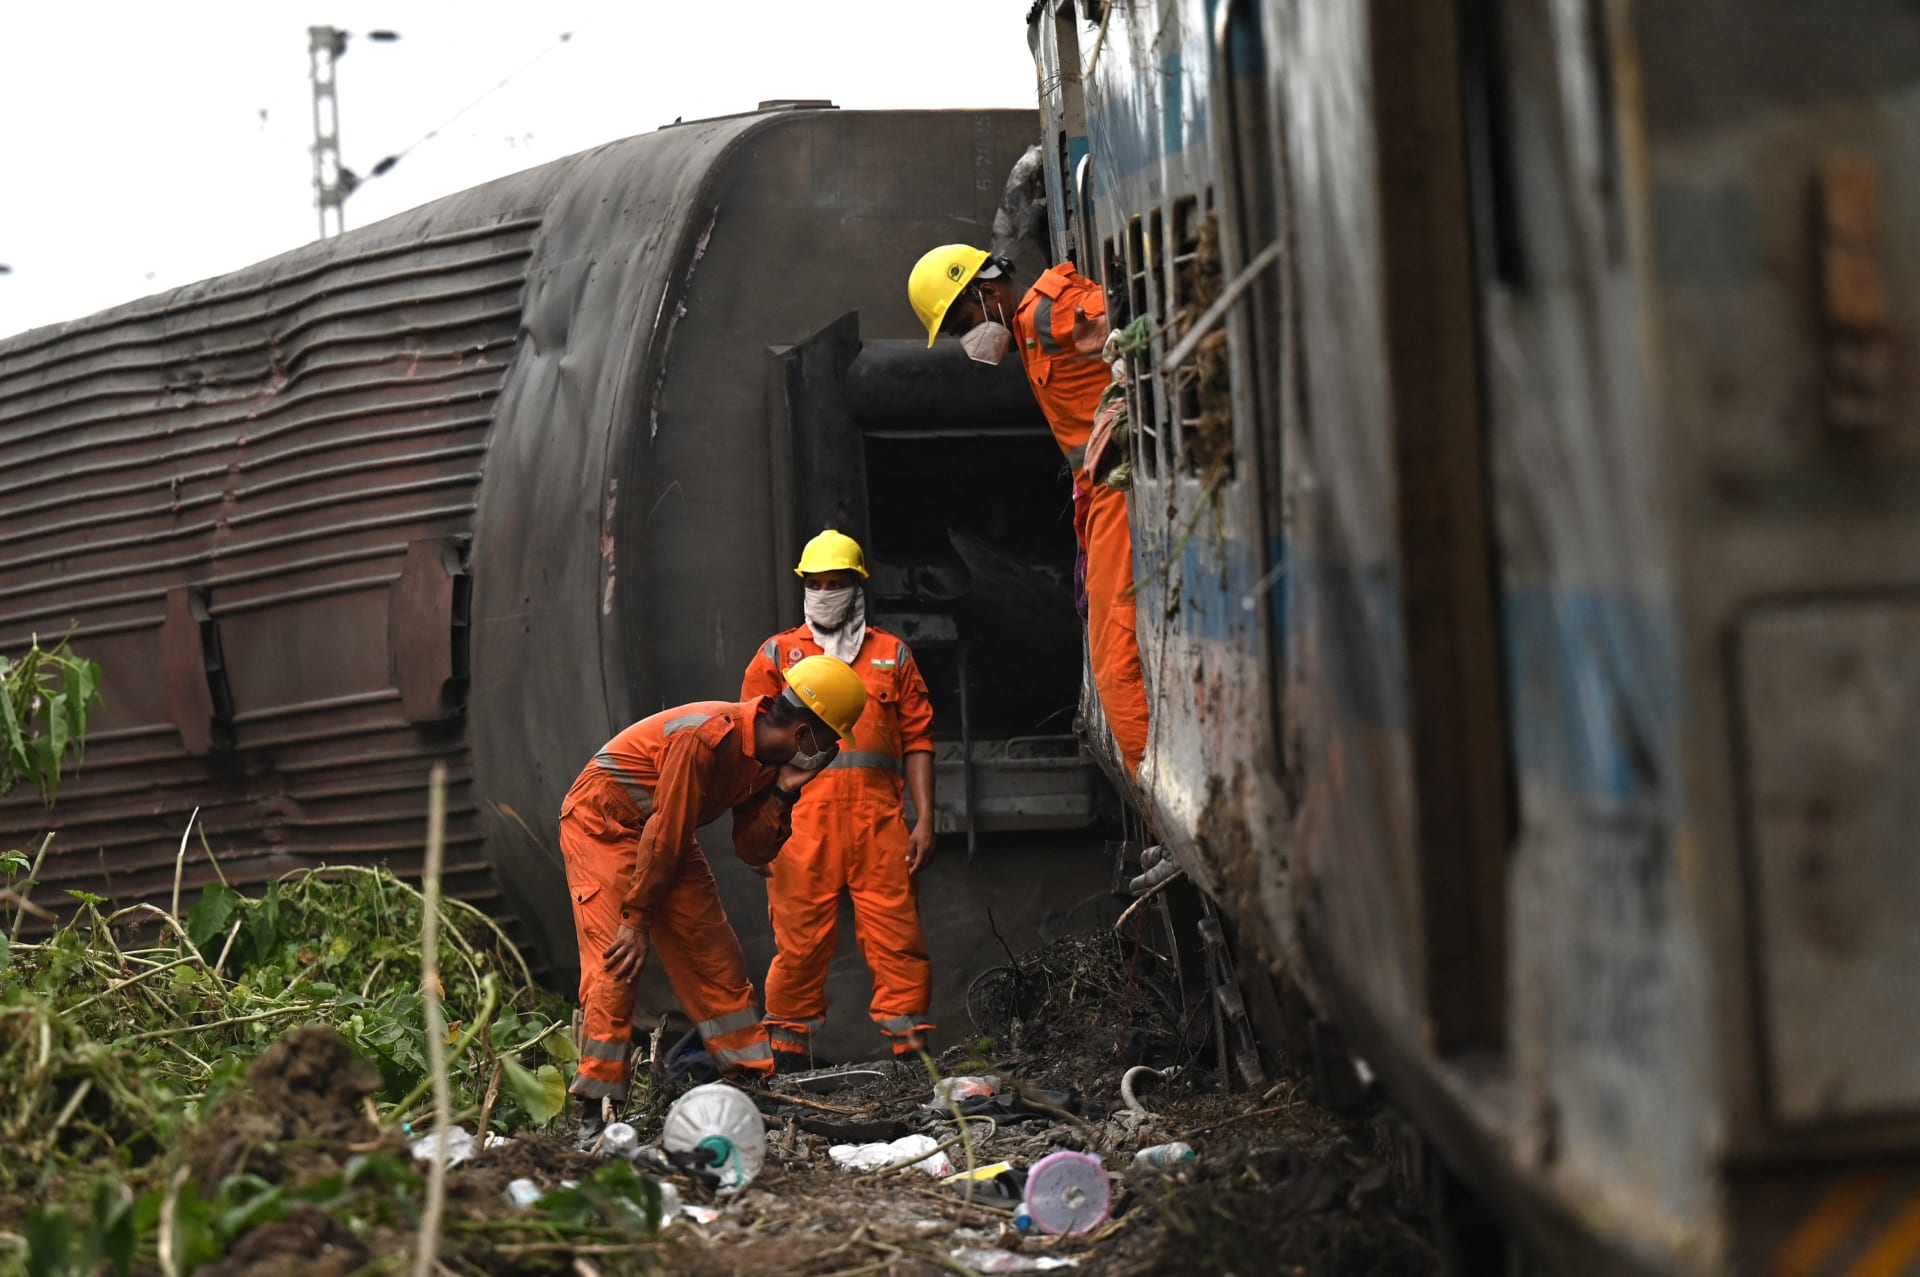 بعد أيام على حادثة القطار الذي أودى بحياة 233 شخصا في الهند.. العثور على شاب على قيد الحياة